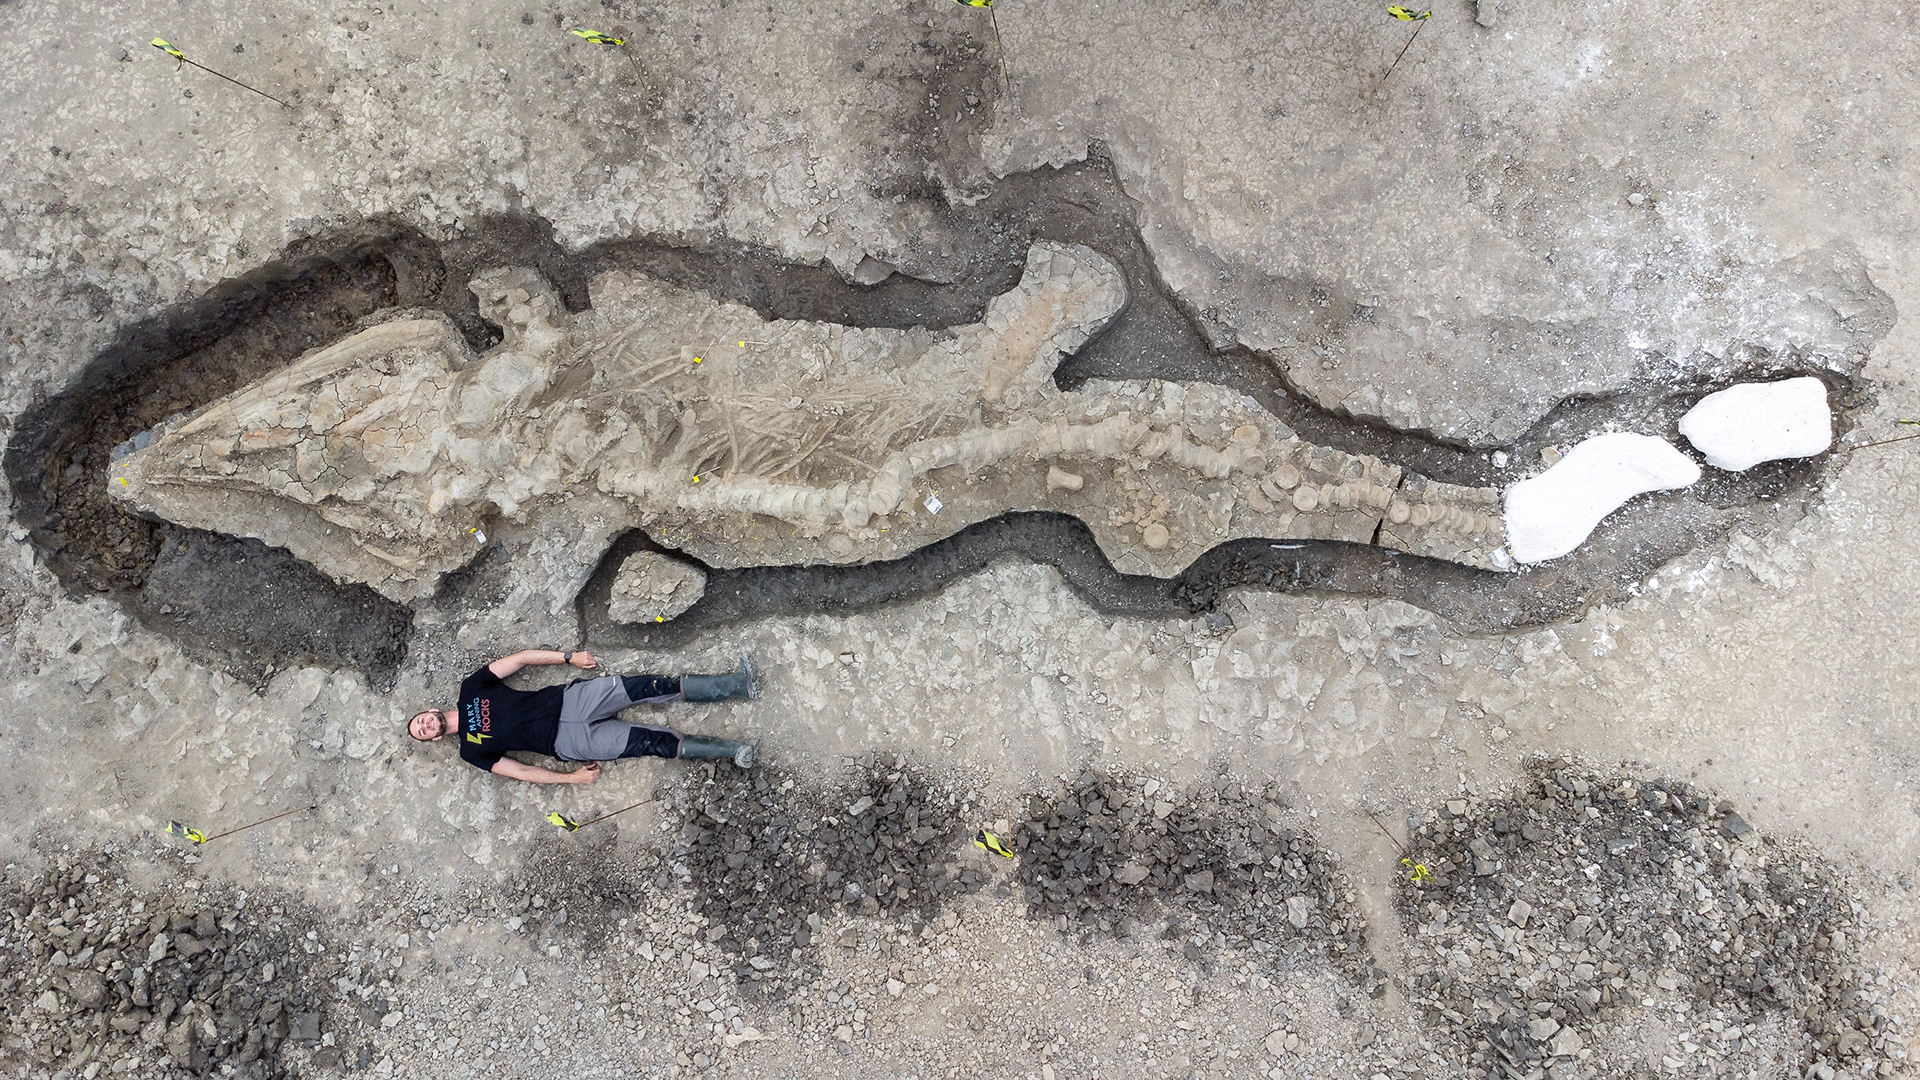 Ein Paläontologe liegt neben einem Ichthyosaurier-Skelett. | Anglian Water/PA Media/dpa